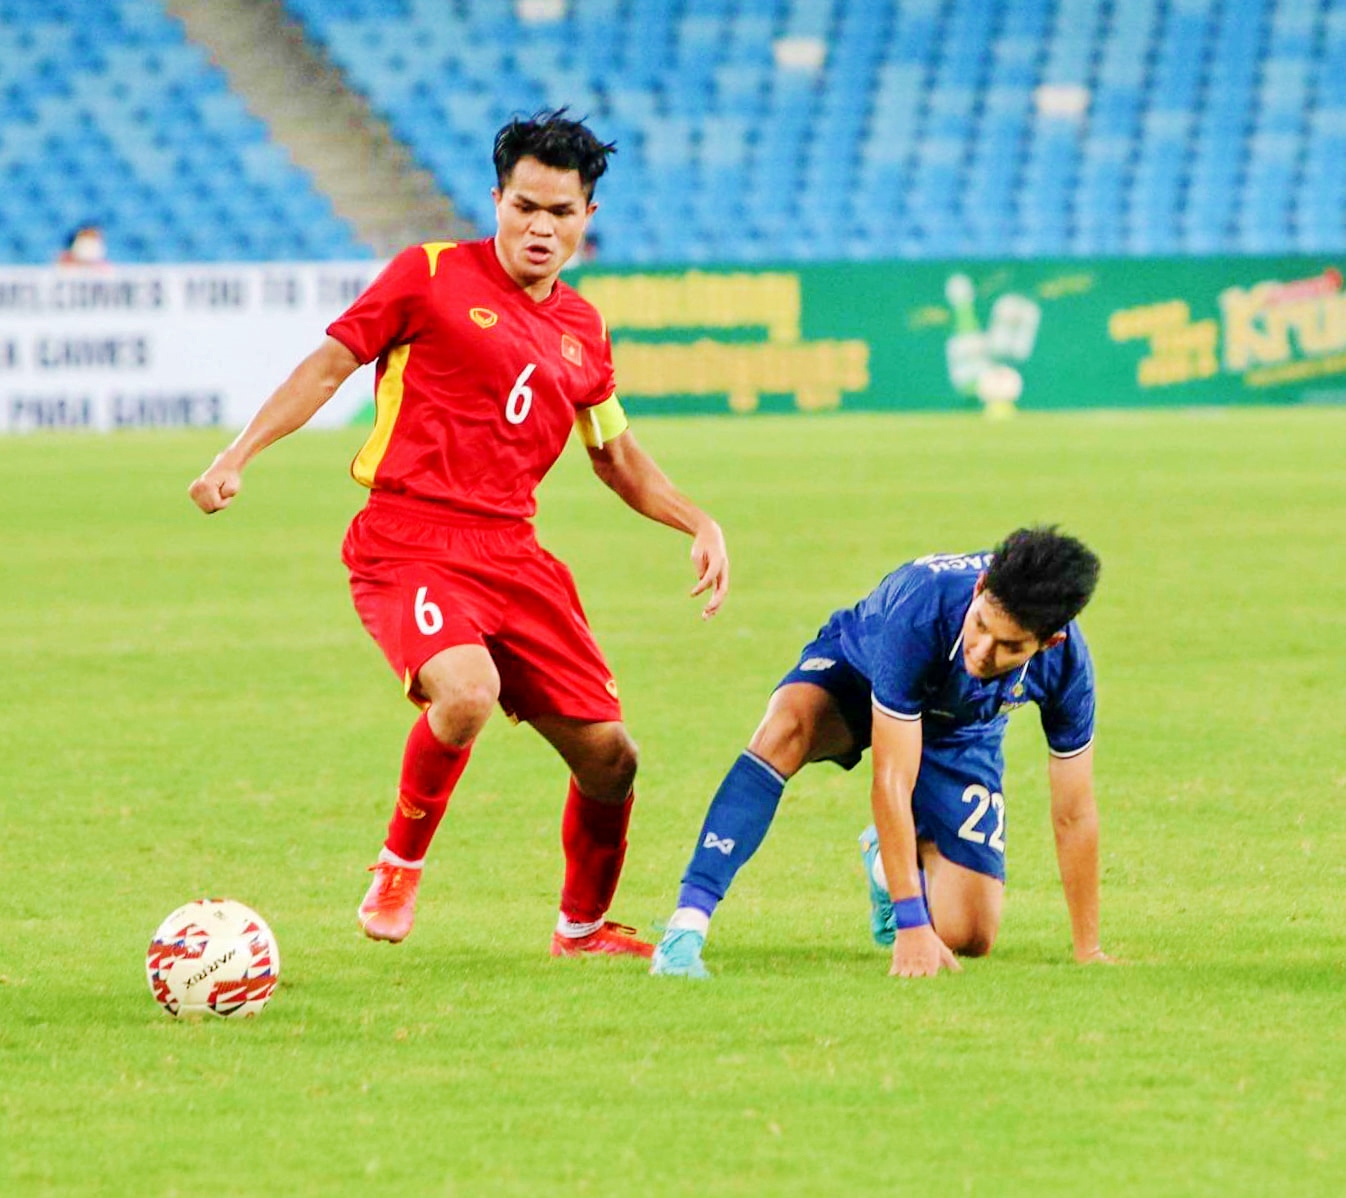 Cầu thủ Dụng Quang Nho - trưởng thành từ sự cố gắng